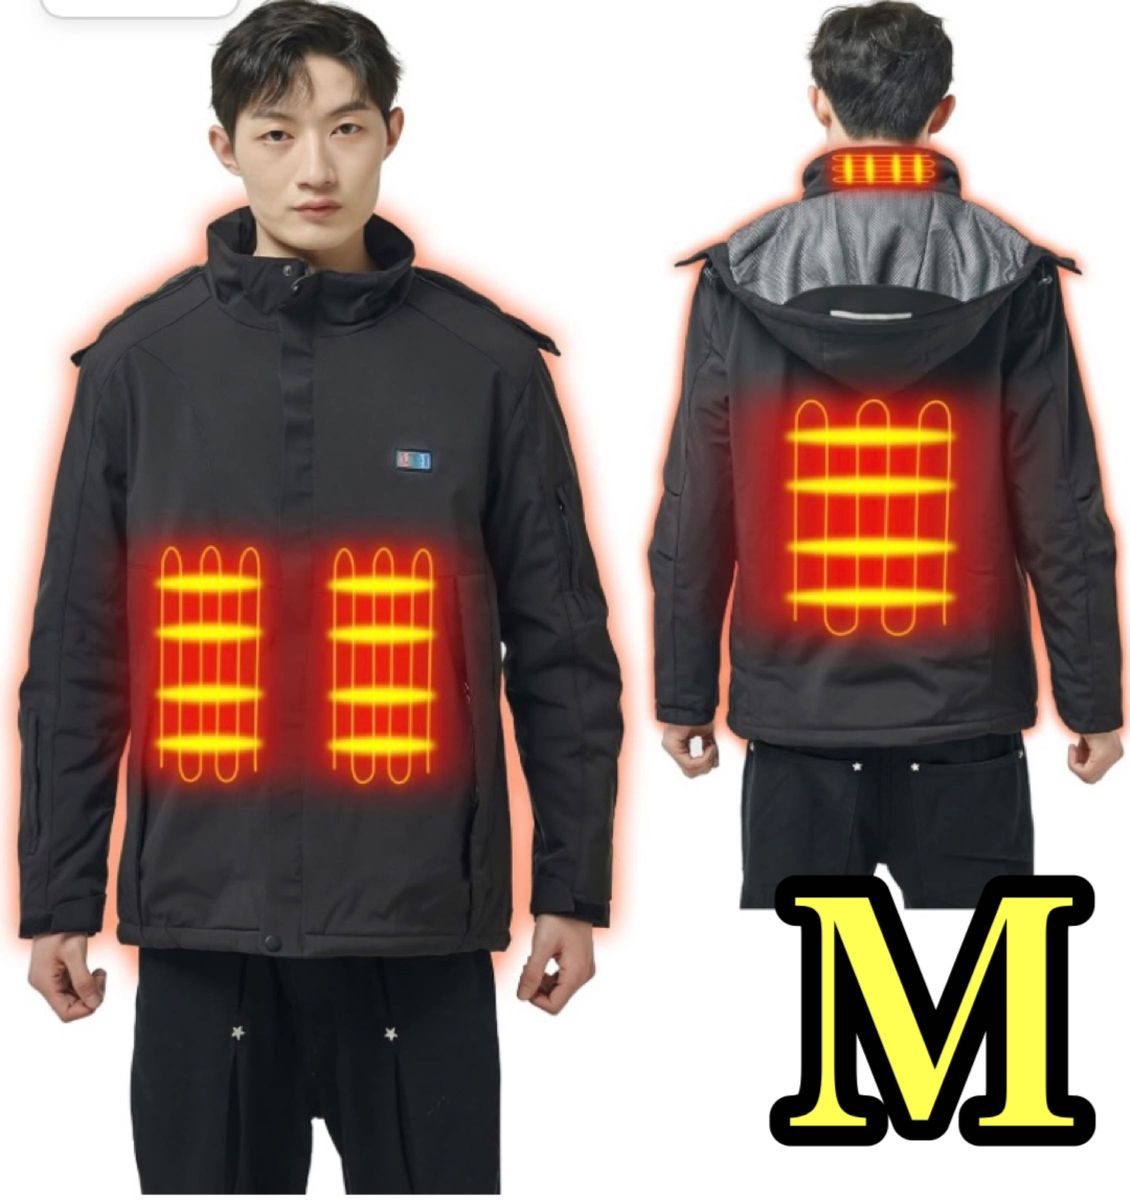 電熱ジャケット ヒーターコート ヒーター内蔵 防寒 急速加熱 三段階温度調節可能 前後独立設定 10000mAhバッテリー M